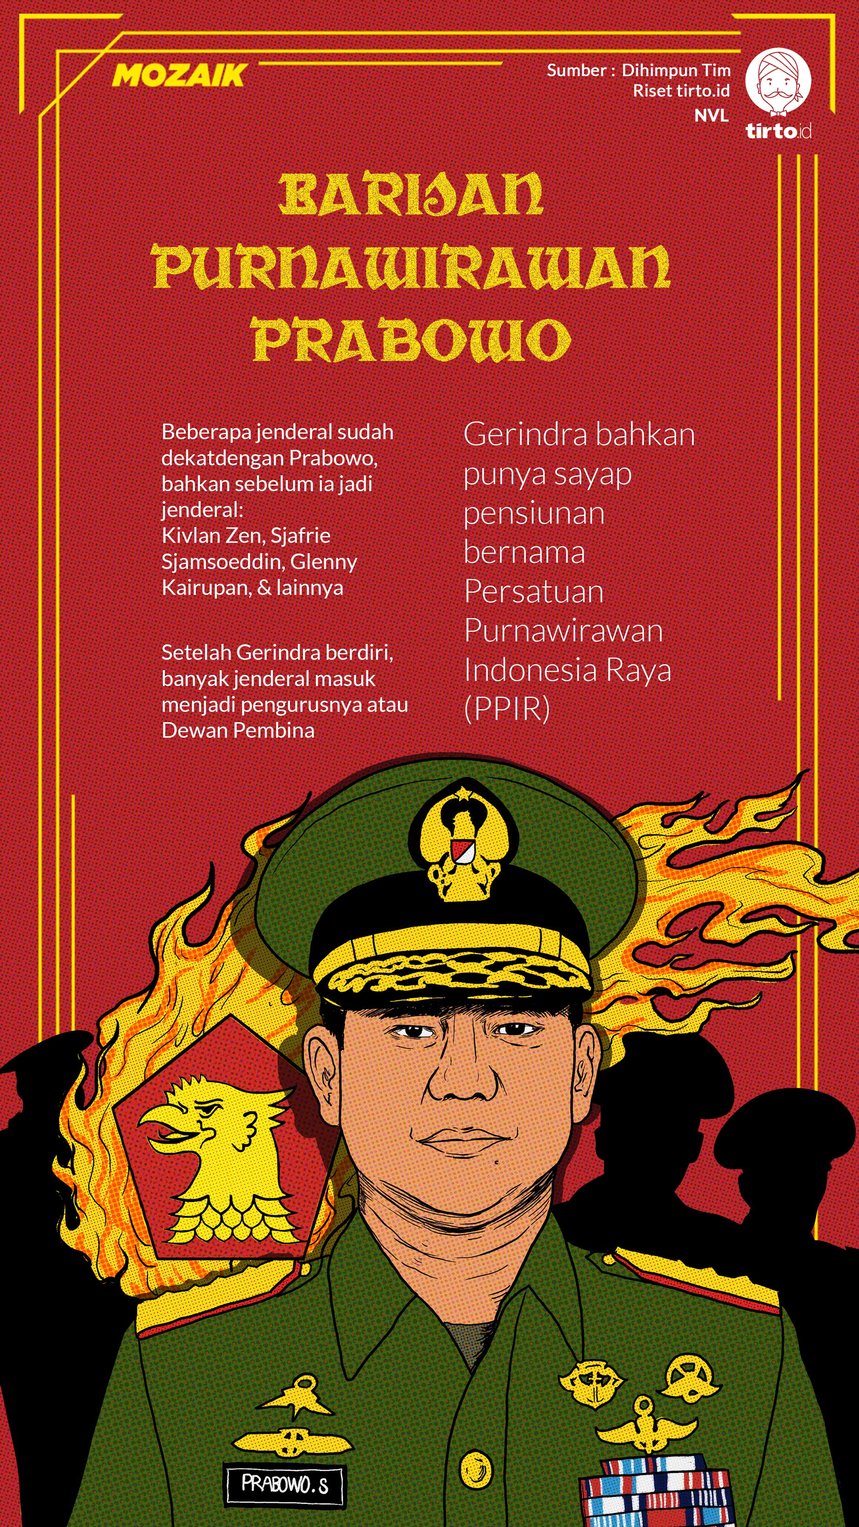 Infografik Mozaik Barisan Purnawirawan Prabowo